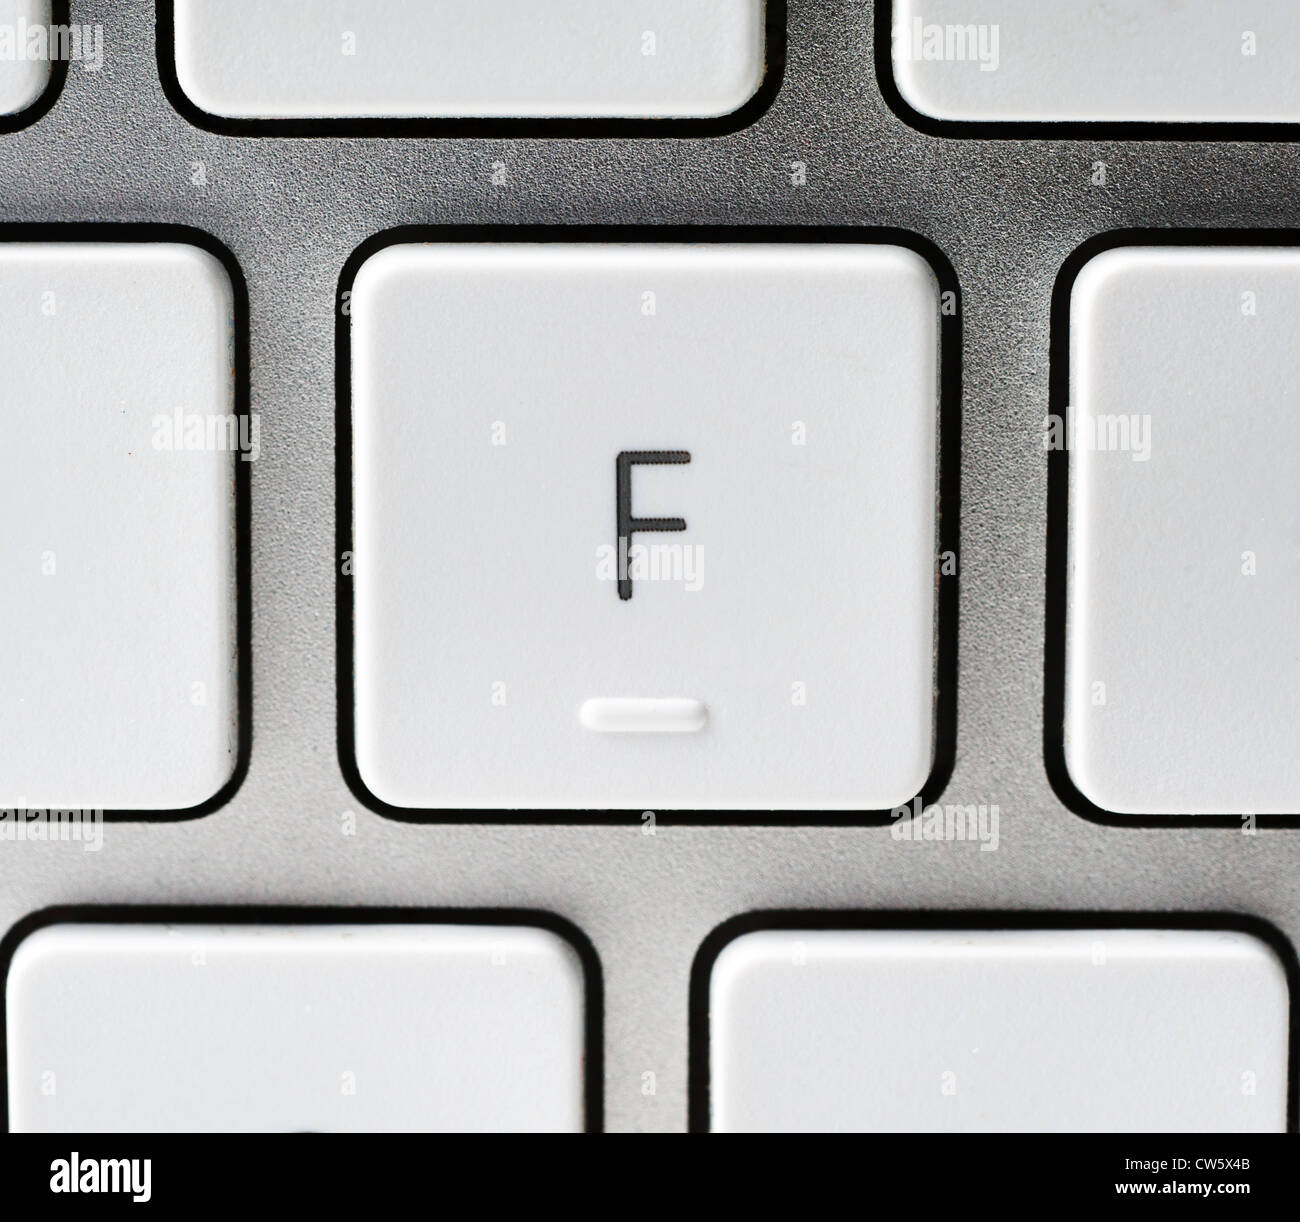 Buchstabe F auf einer Apple-Tastatur Stockfoto